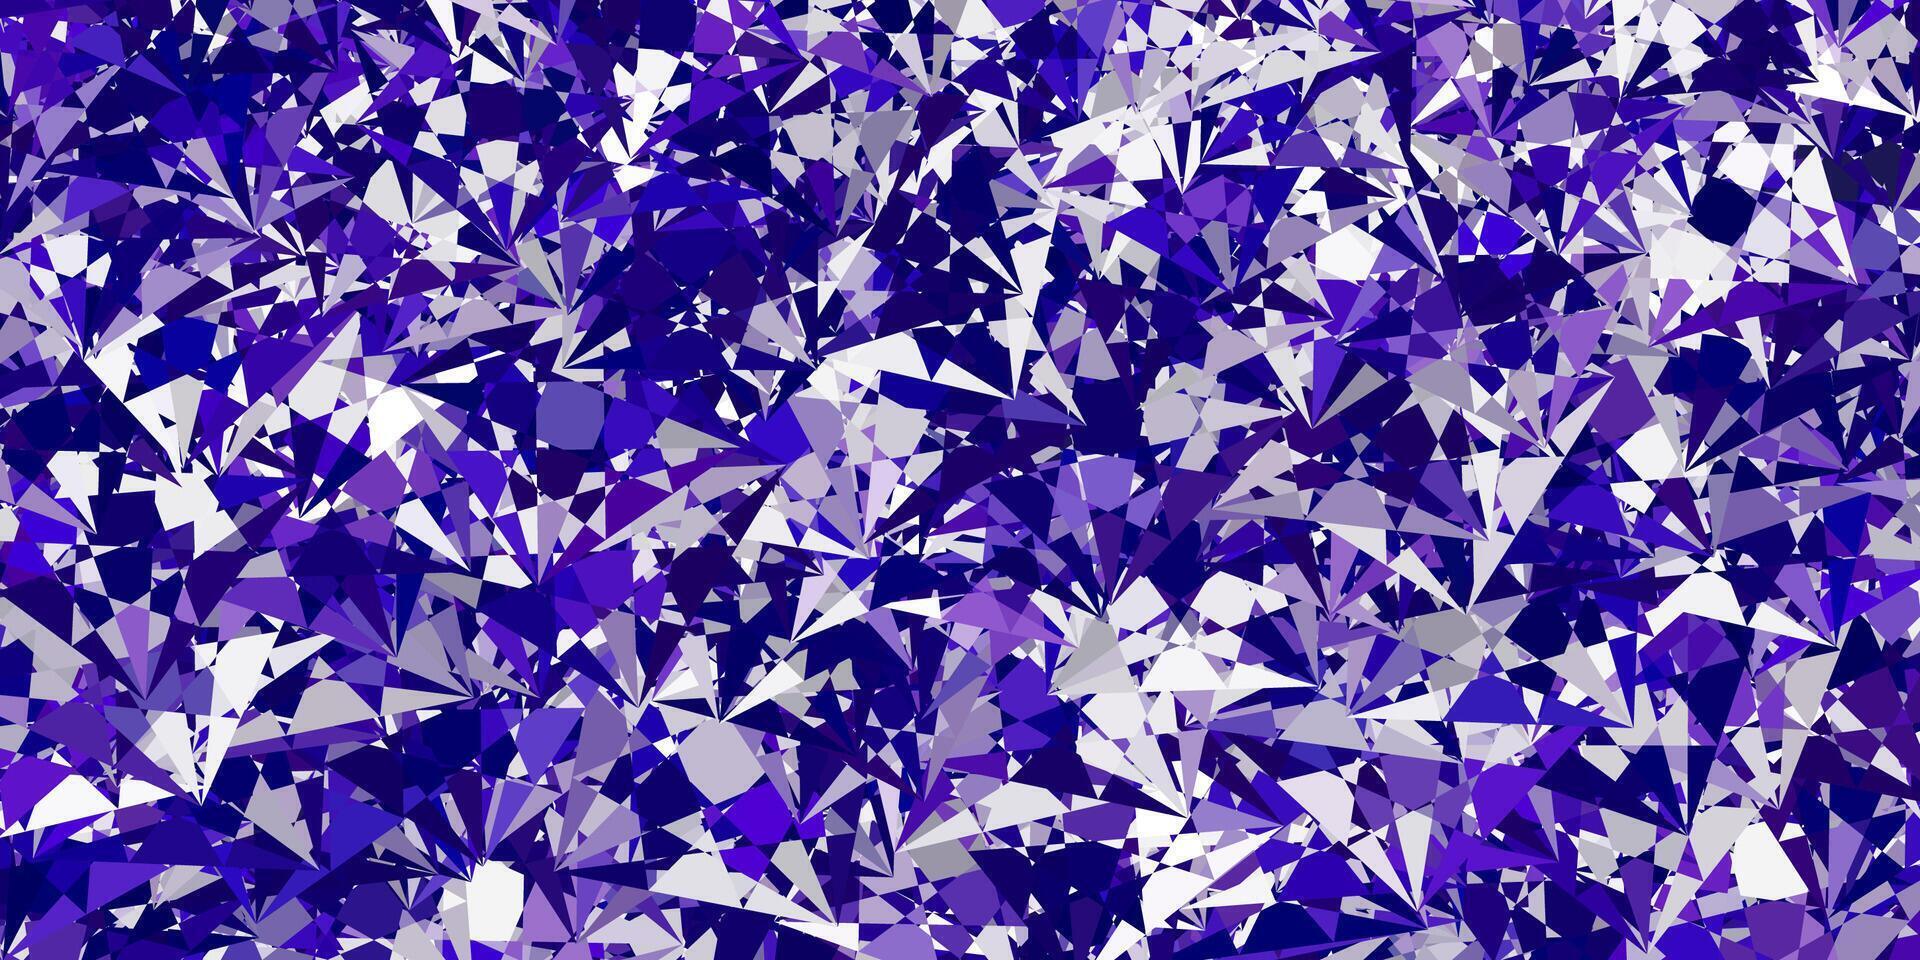 fond de vecteur violet clair avec des formes polygonales.